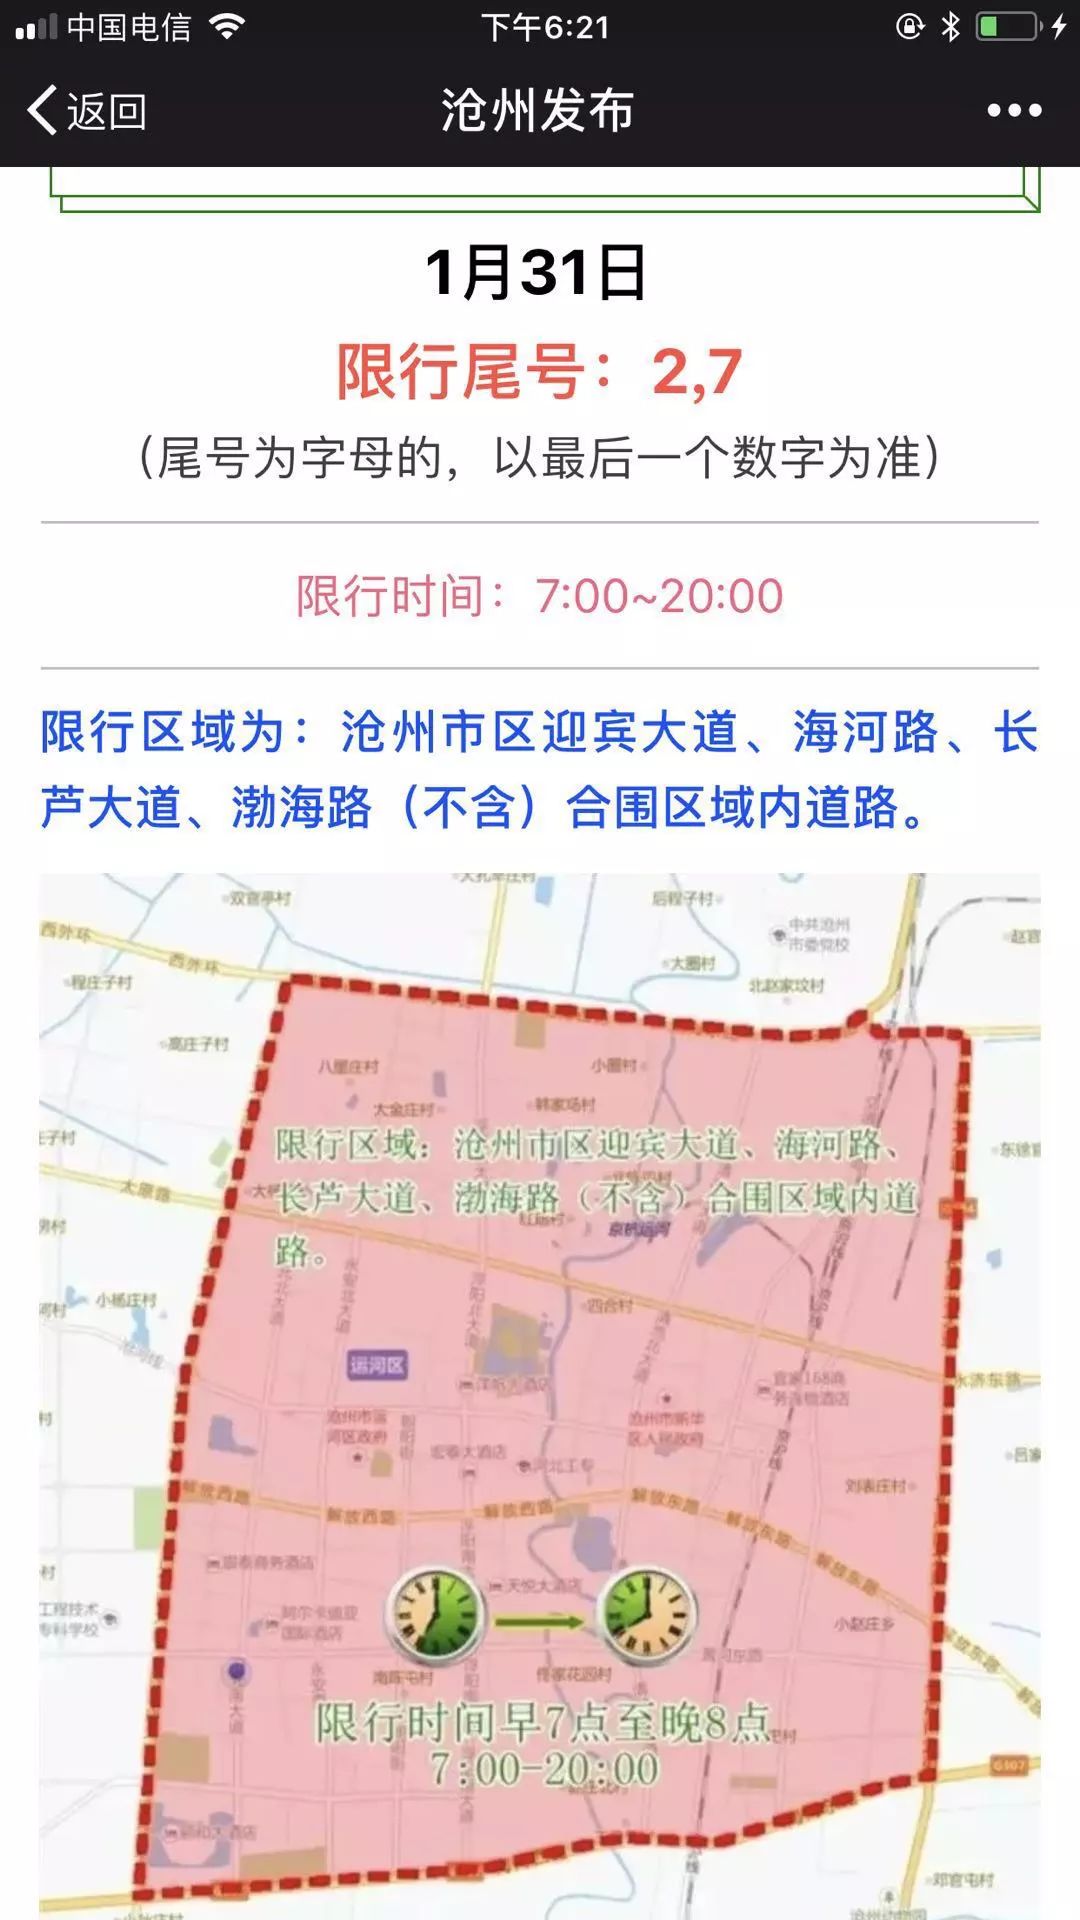 肃宁县公安局发布限行公告,今天开始限行3,8两个尾号,沧州市区和其他